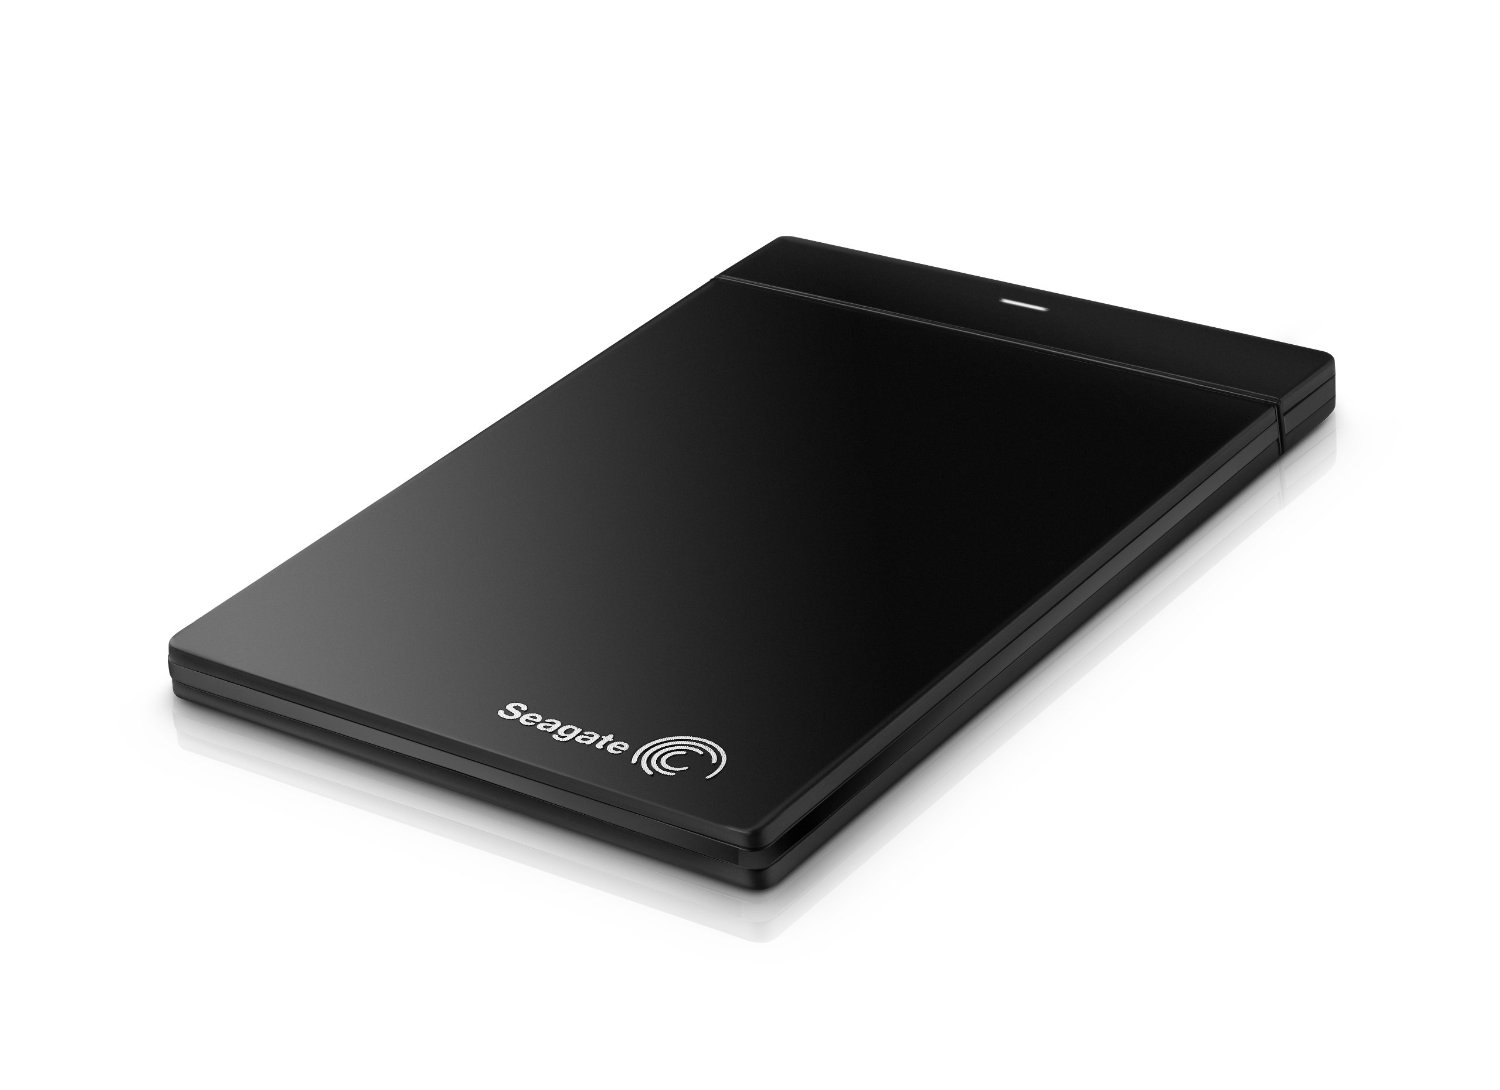 希捷 Seagate 500GB USB 3.0 超薄型攜帶型移動硬碟 STCD500100 $64.99免運費